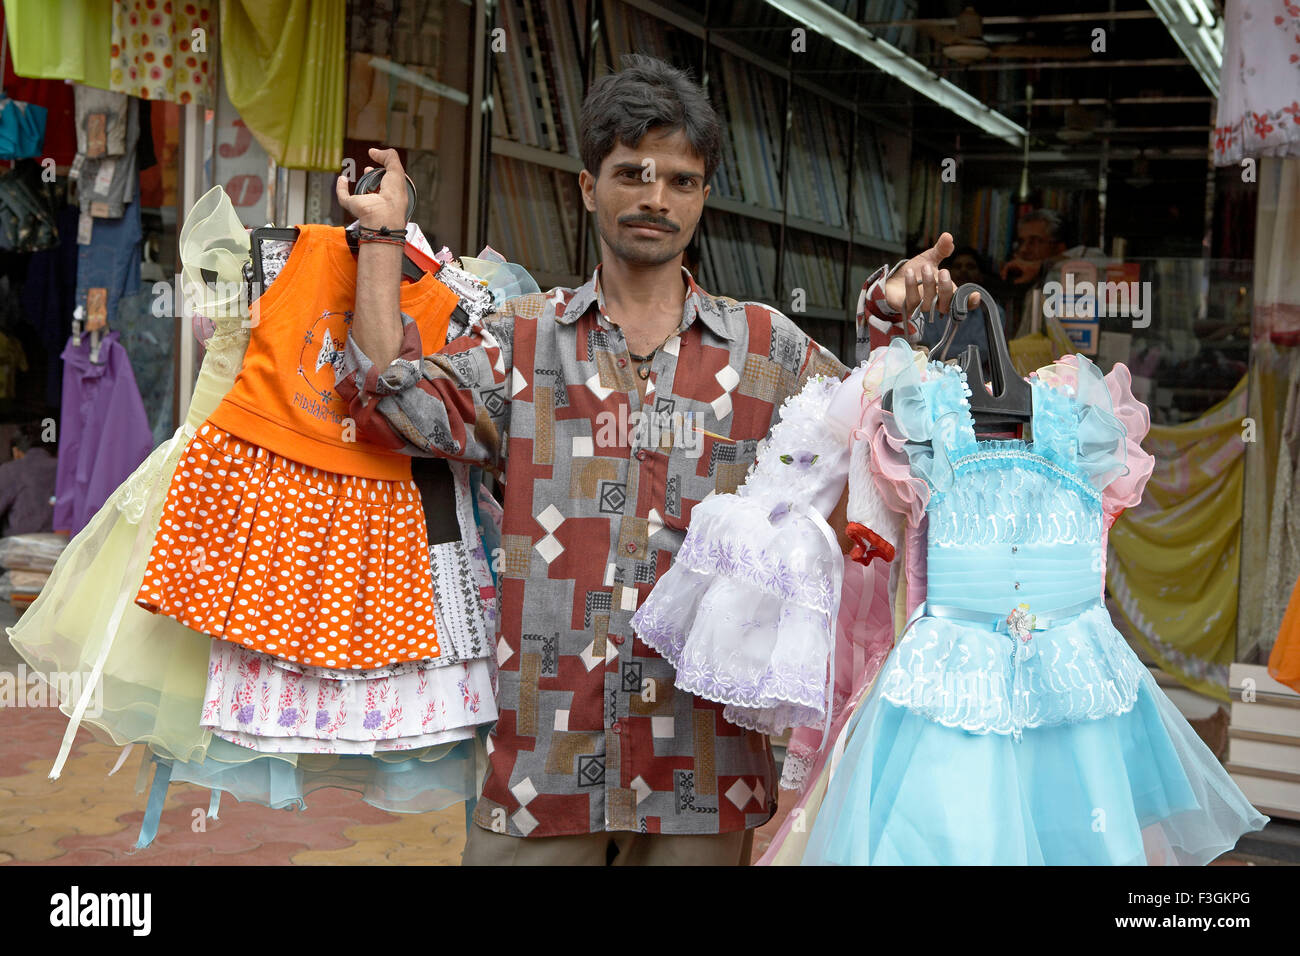 Eine Hawker zeigt bereit indischen Kleider, während er entlang einer befahrenen Straße geht; Mumbai Bombay; Maharashtra; Indien Stockfoto